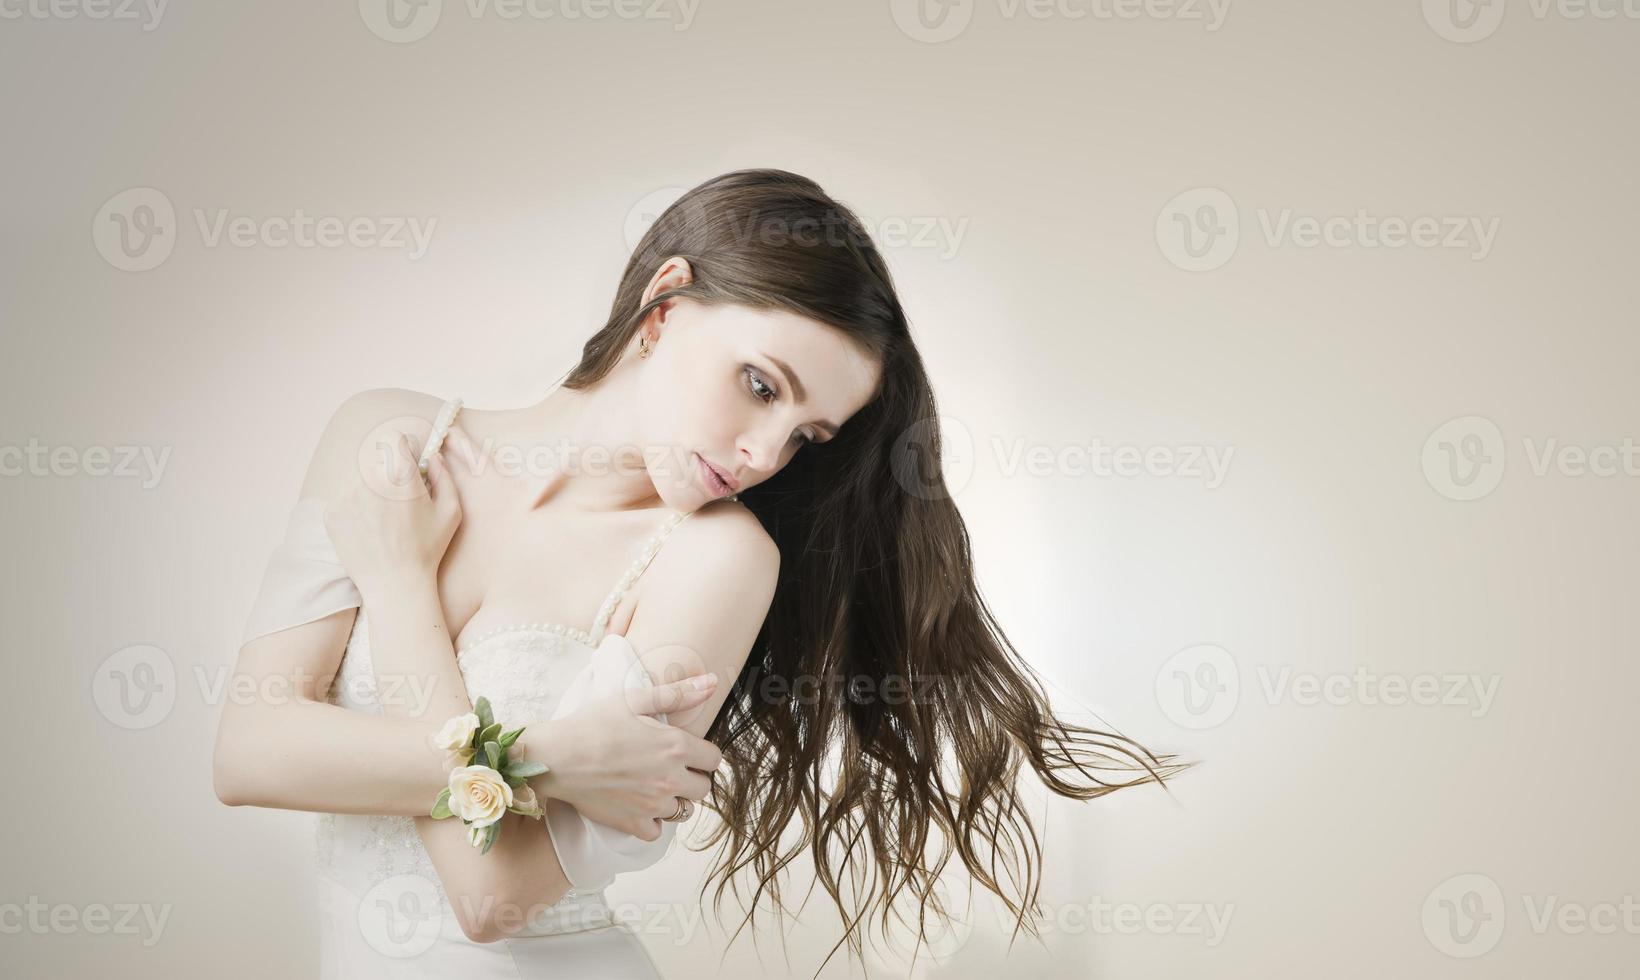 belle jeune mariée dans une robe blanche photo